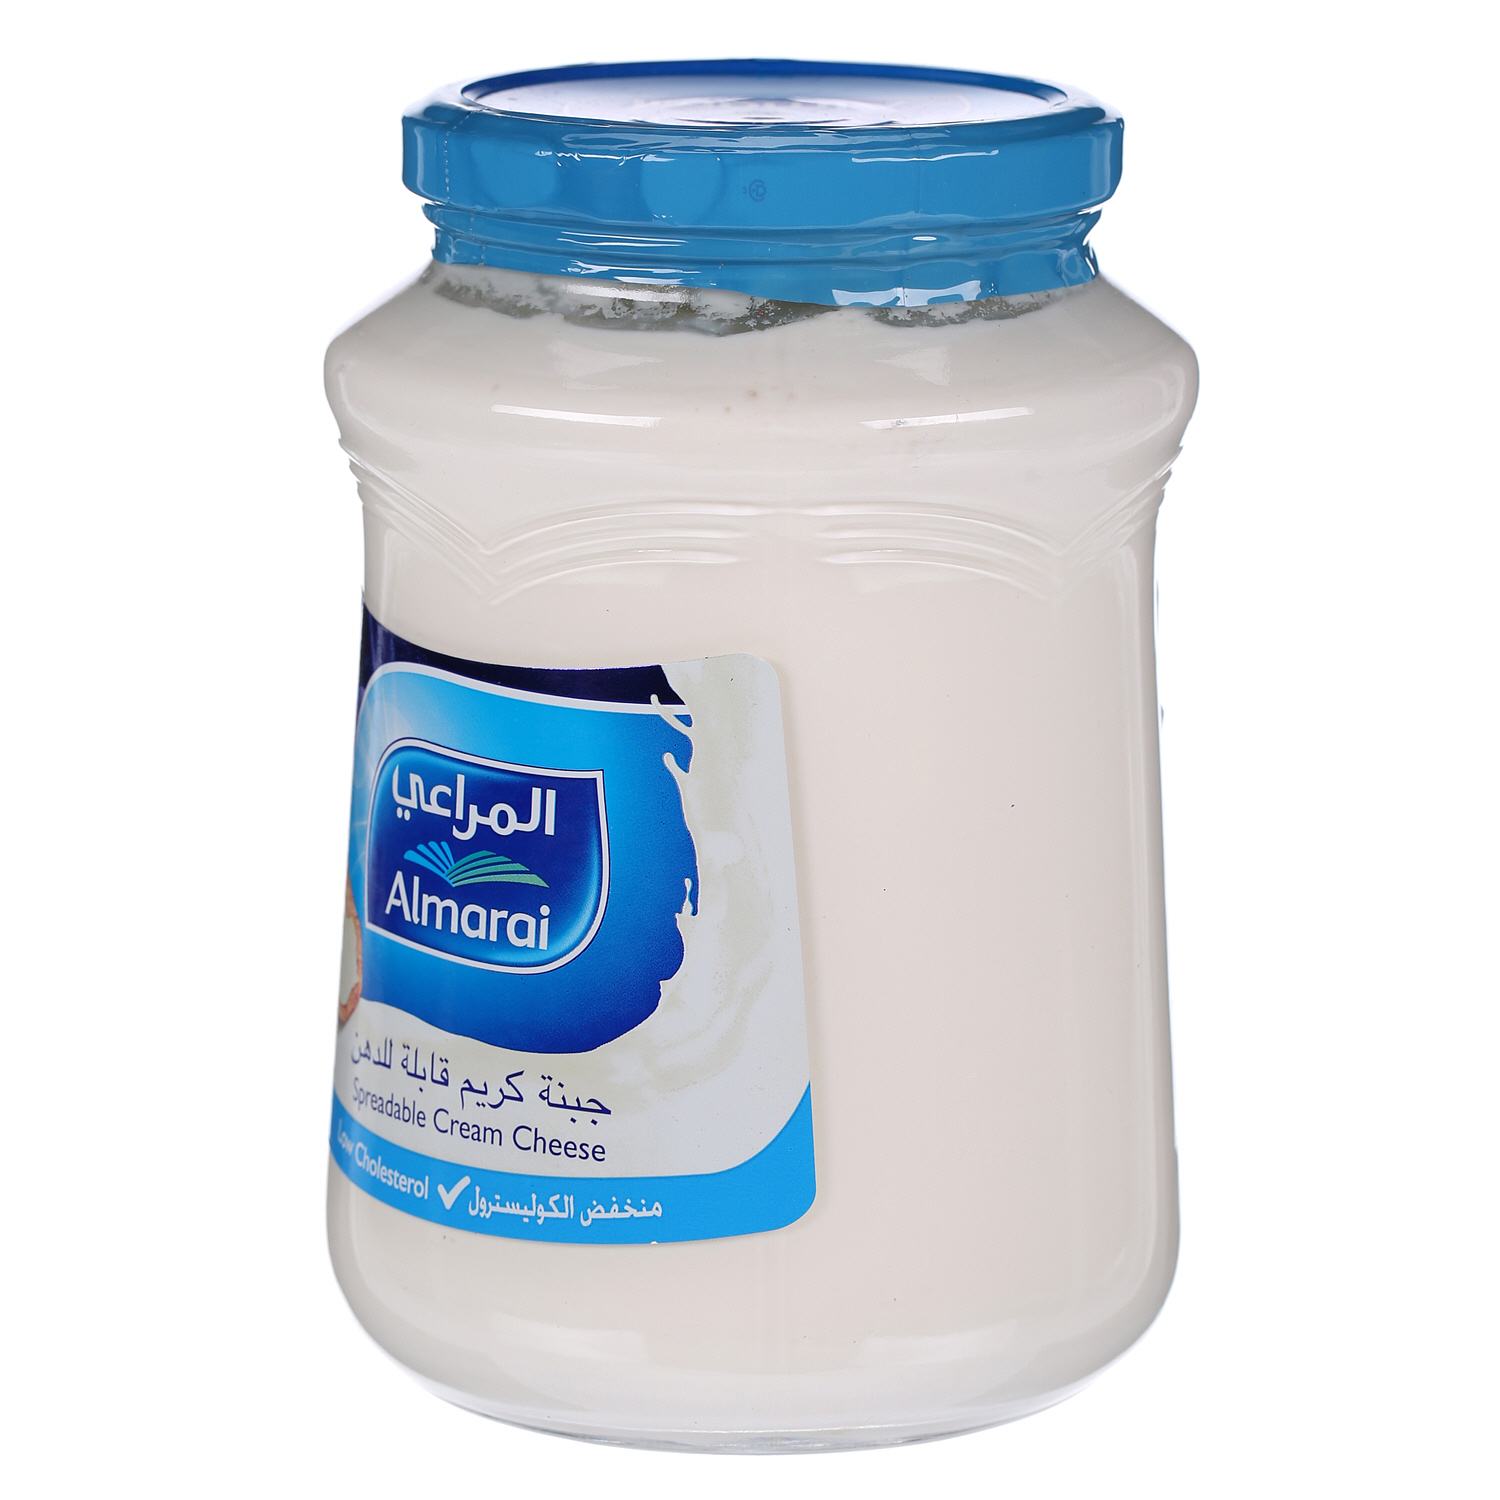 Al Marai Lower Cholesterol Jar Cheese 910 g